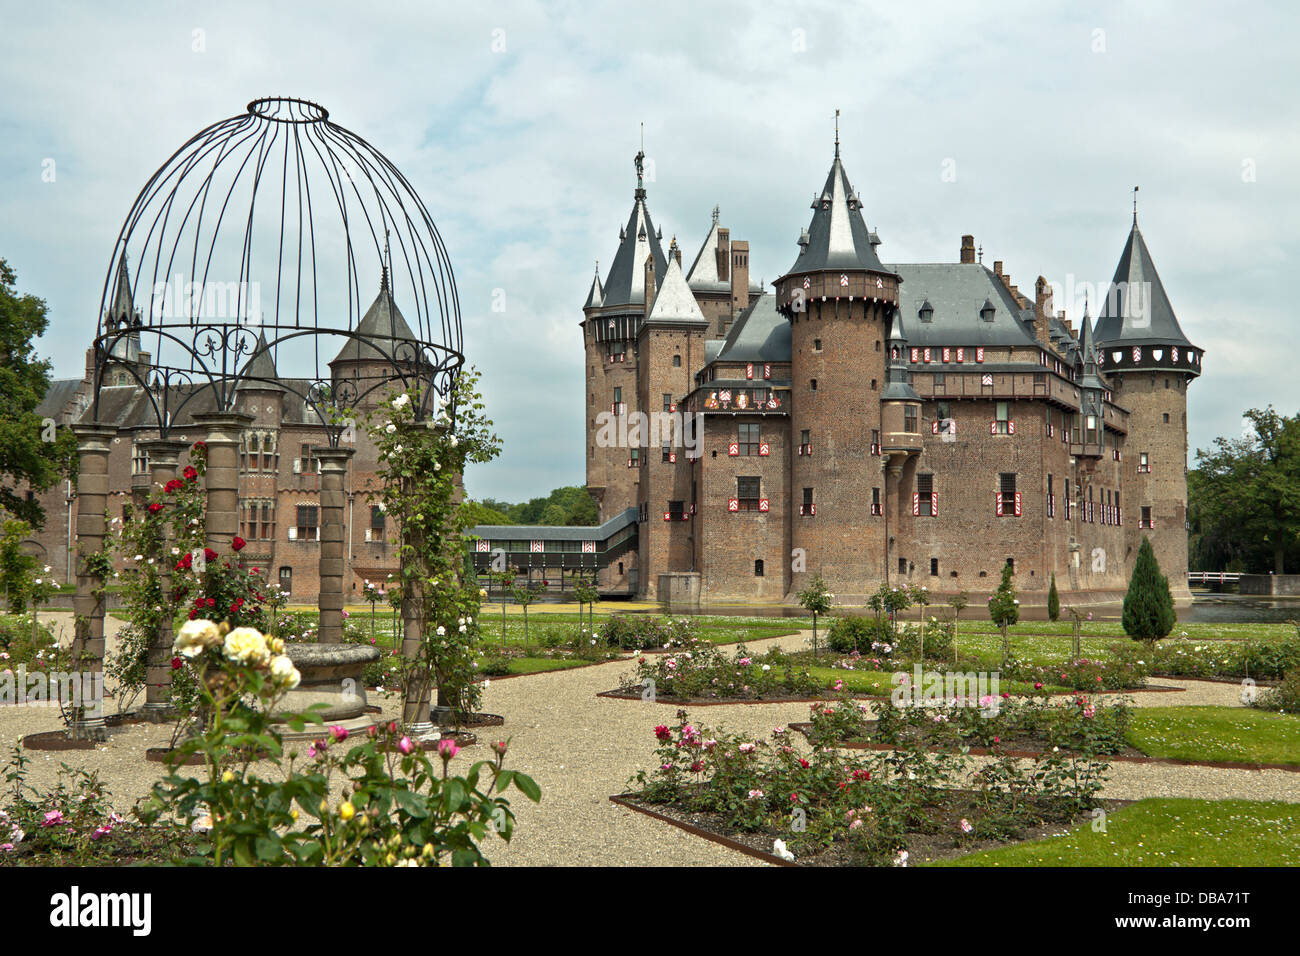 Castle De Haar, viewed from the rose garden, Haarzuilens, Utrecht, The Netherlands Stock Photo